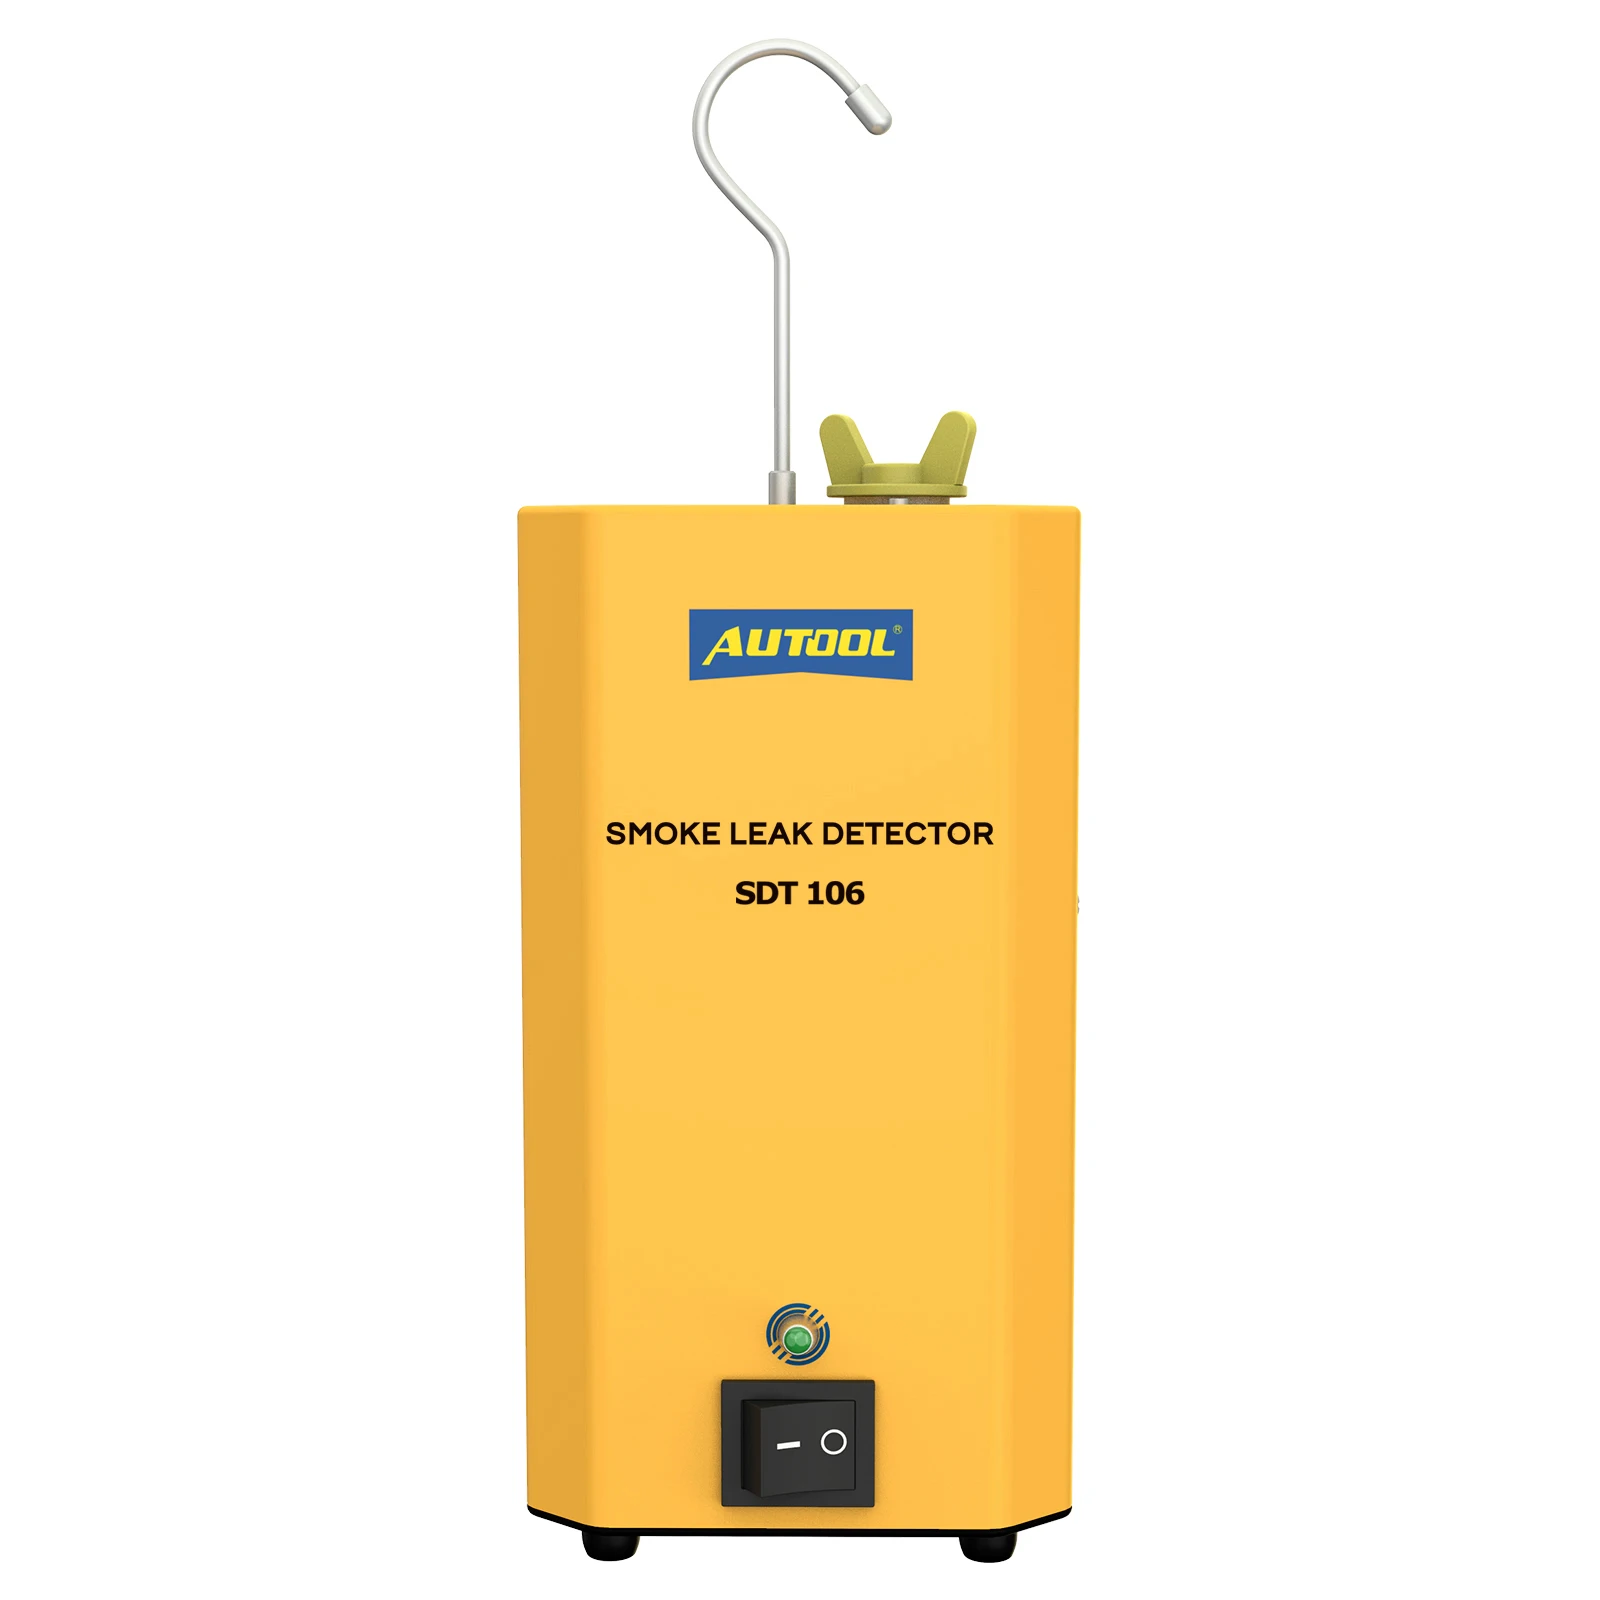 

Автомобильный детектор дыма SDT106, диагностический прибор для обнаружения утечки газа в автомобиле